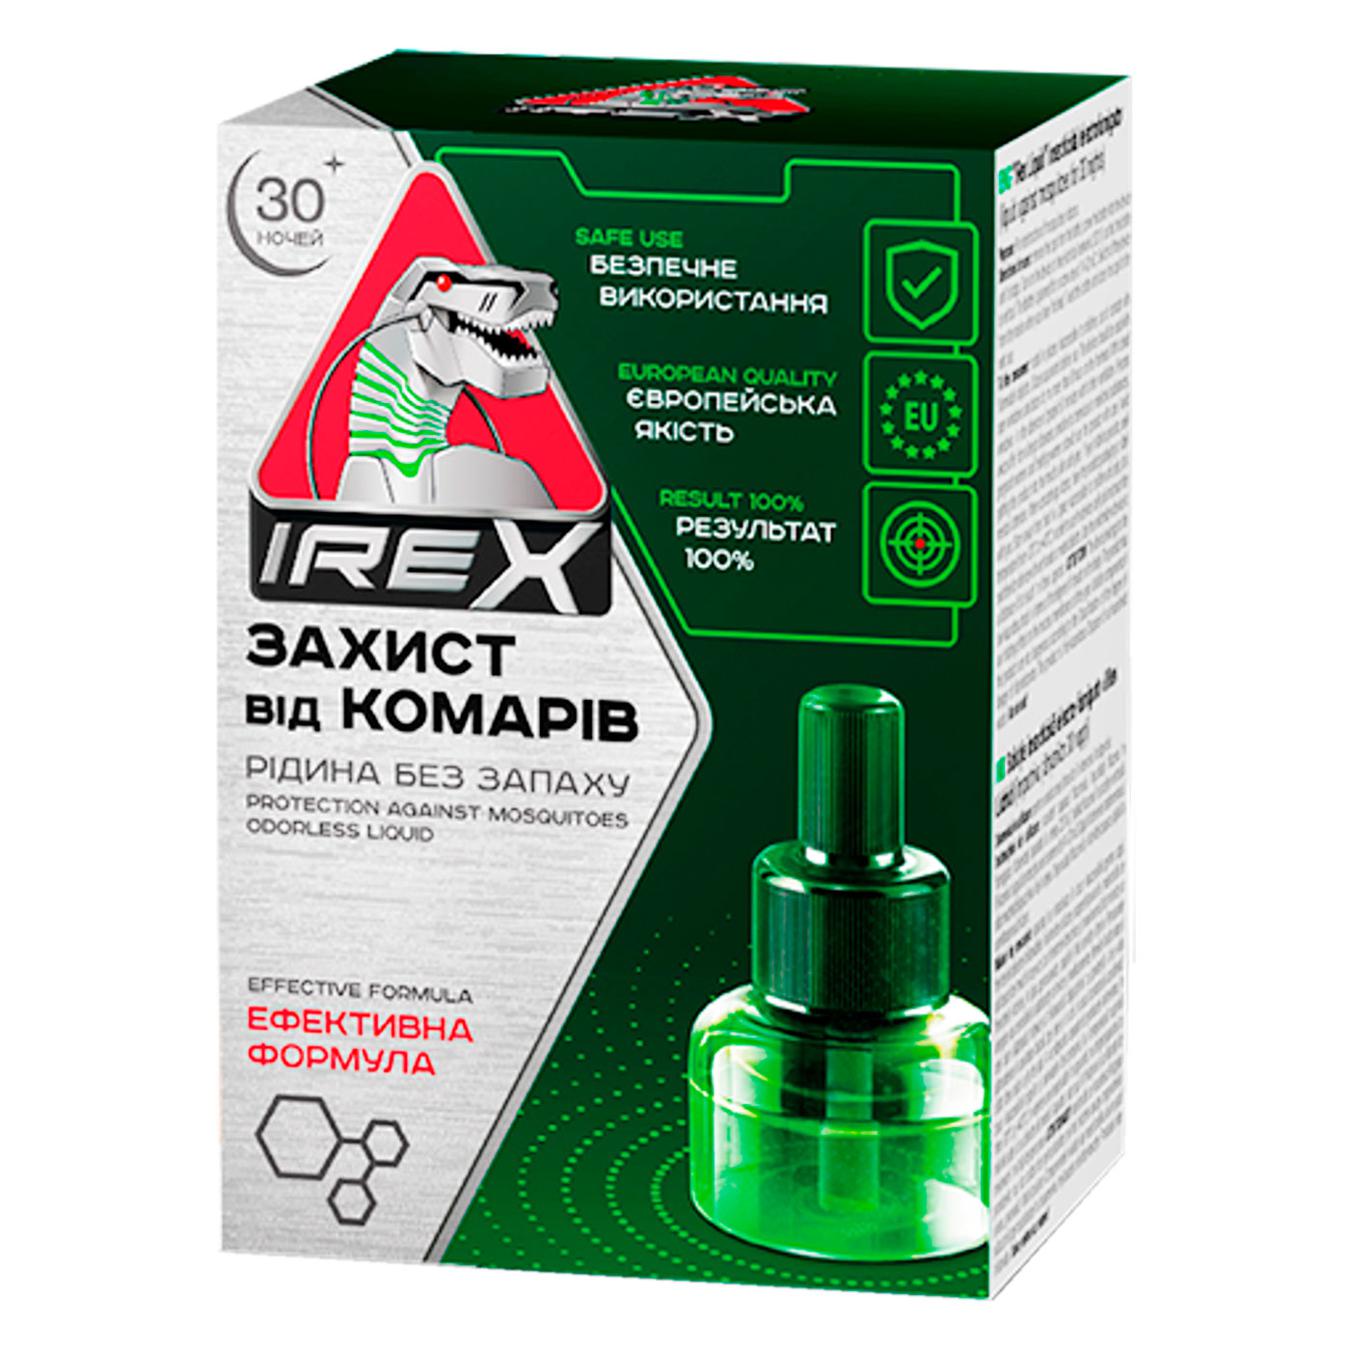 Irex liquid against mosquitoes 30 nights